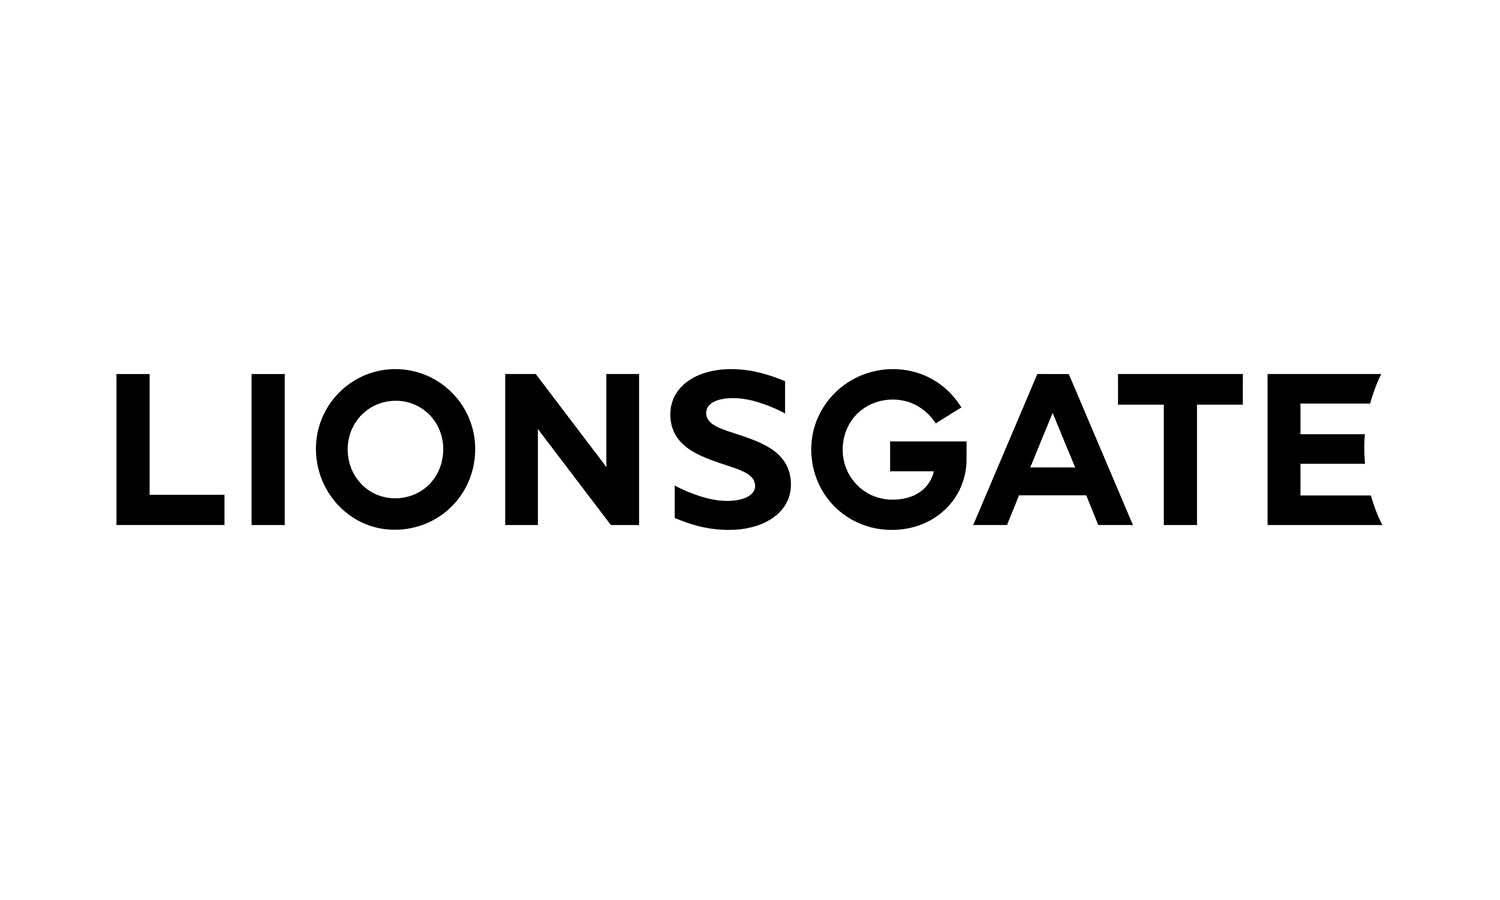 Lionsgate Logo Design: History & Evolution - Kreafolk